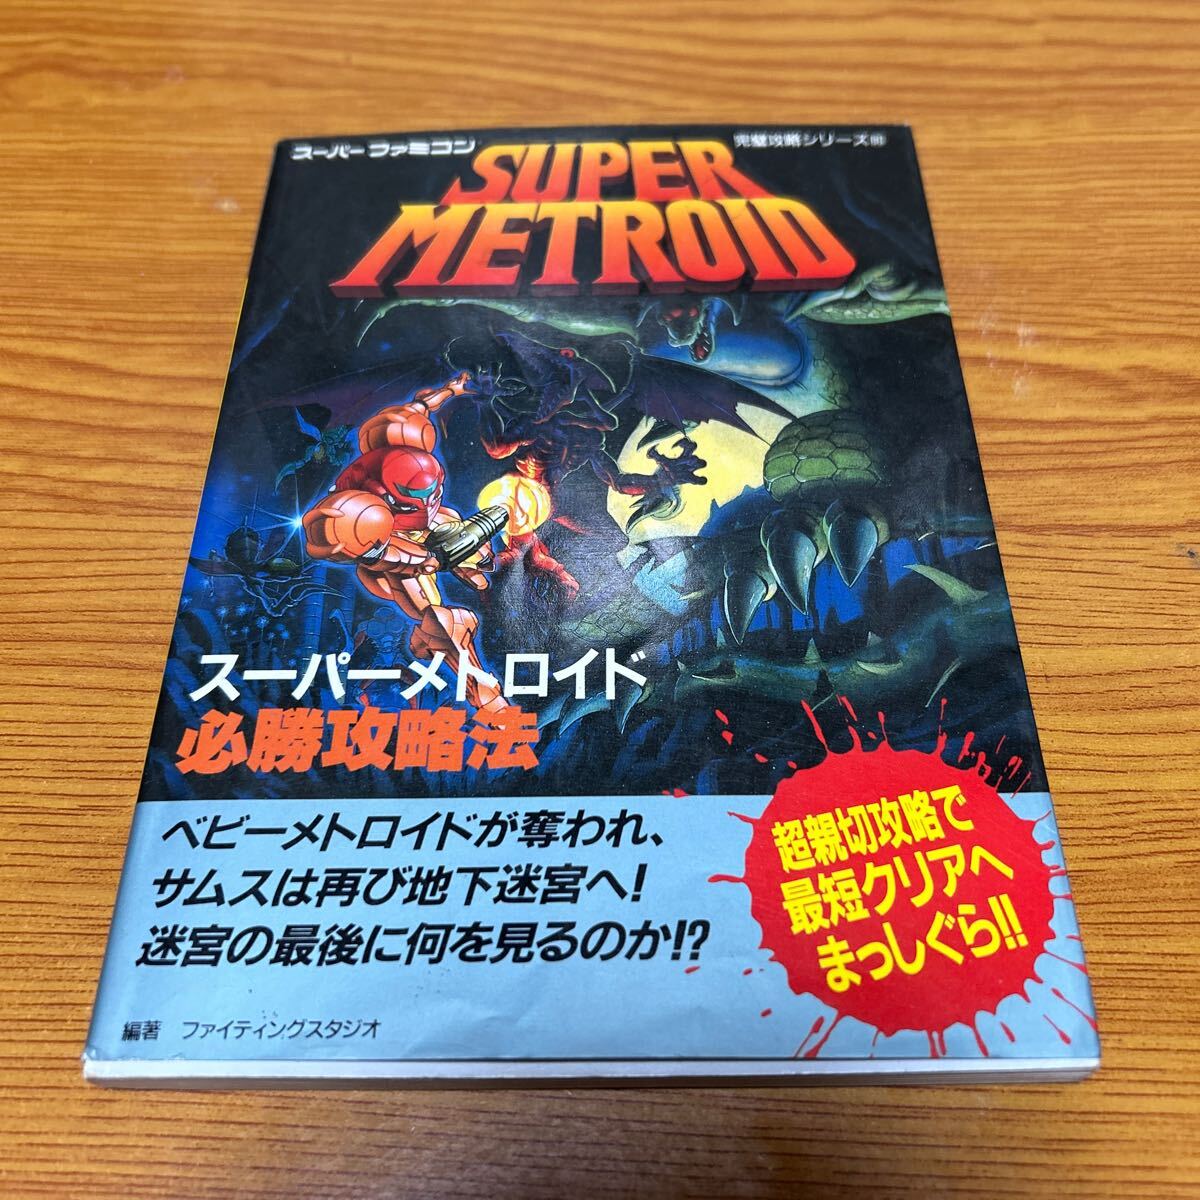 スーパーファミコン 完璧攻略シリーズ スーパーメトロイド 必勝攻略法 双葉社 1995年の画像1